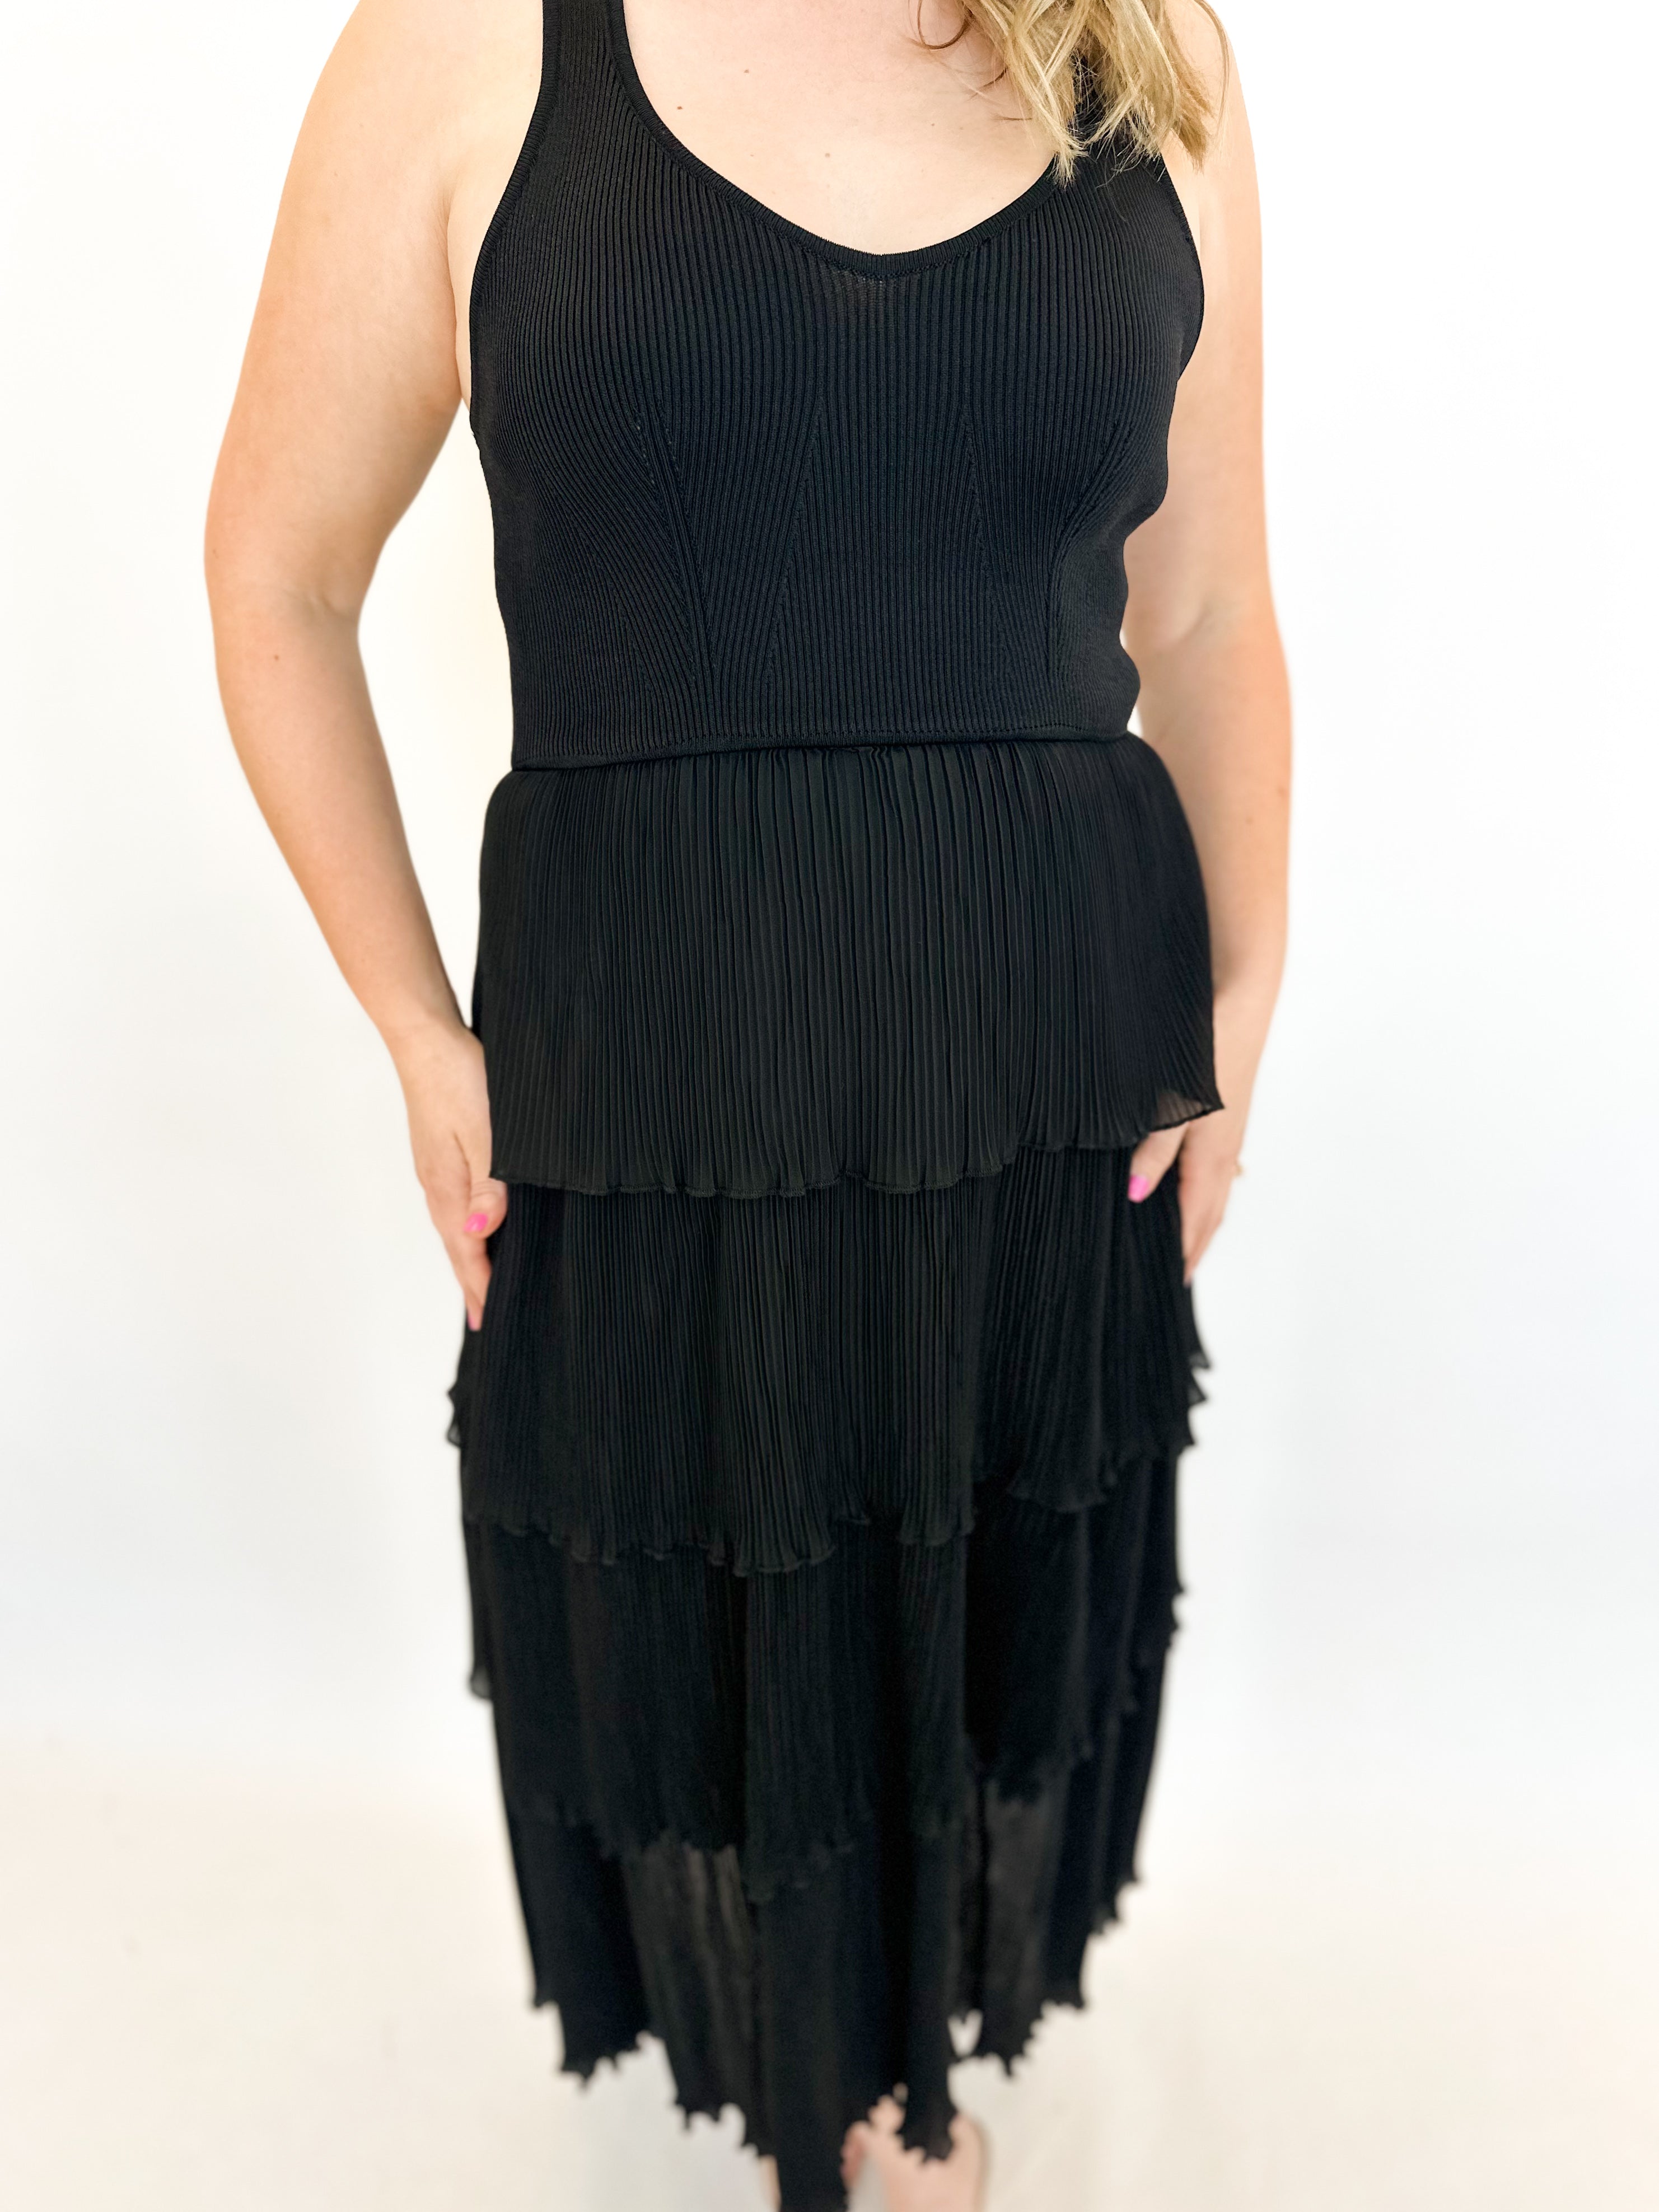 Cabo Midi Dress - Classic Black-500 Midi-&MERCI-July & June Women's Fashion Boutique Located in San Antonio, Texas